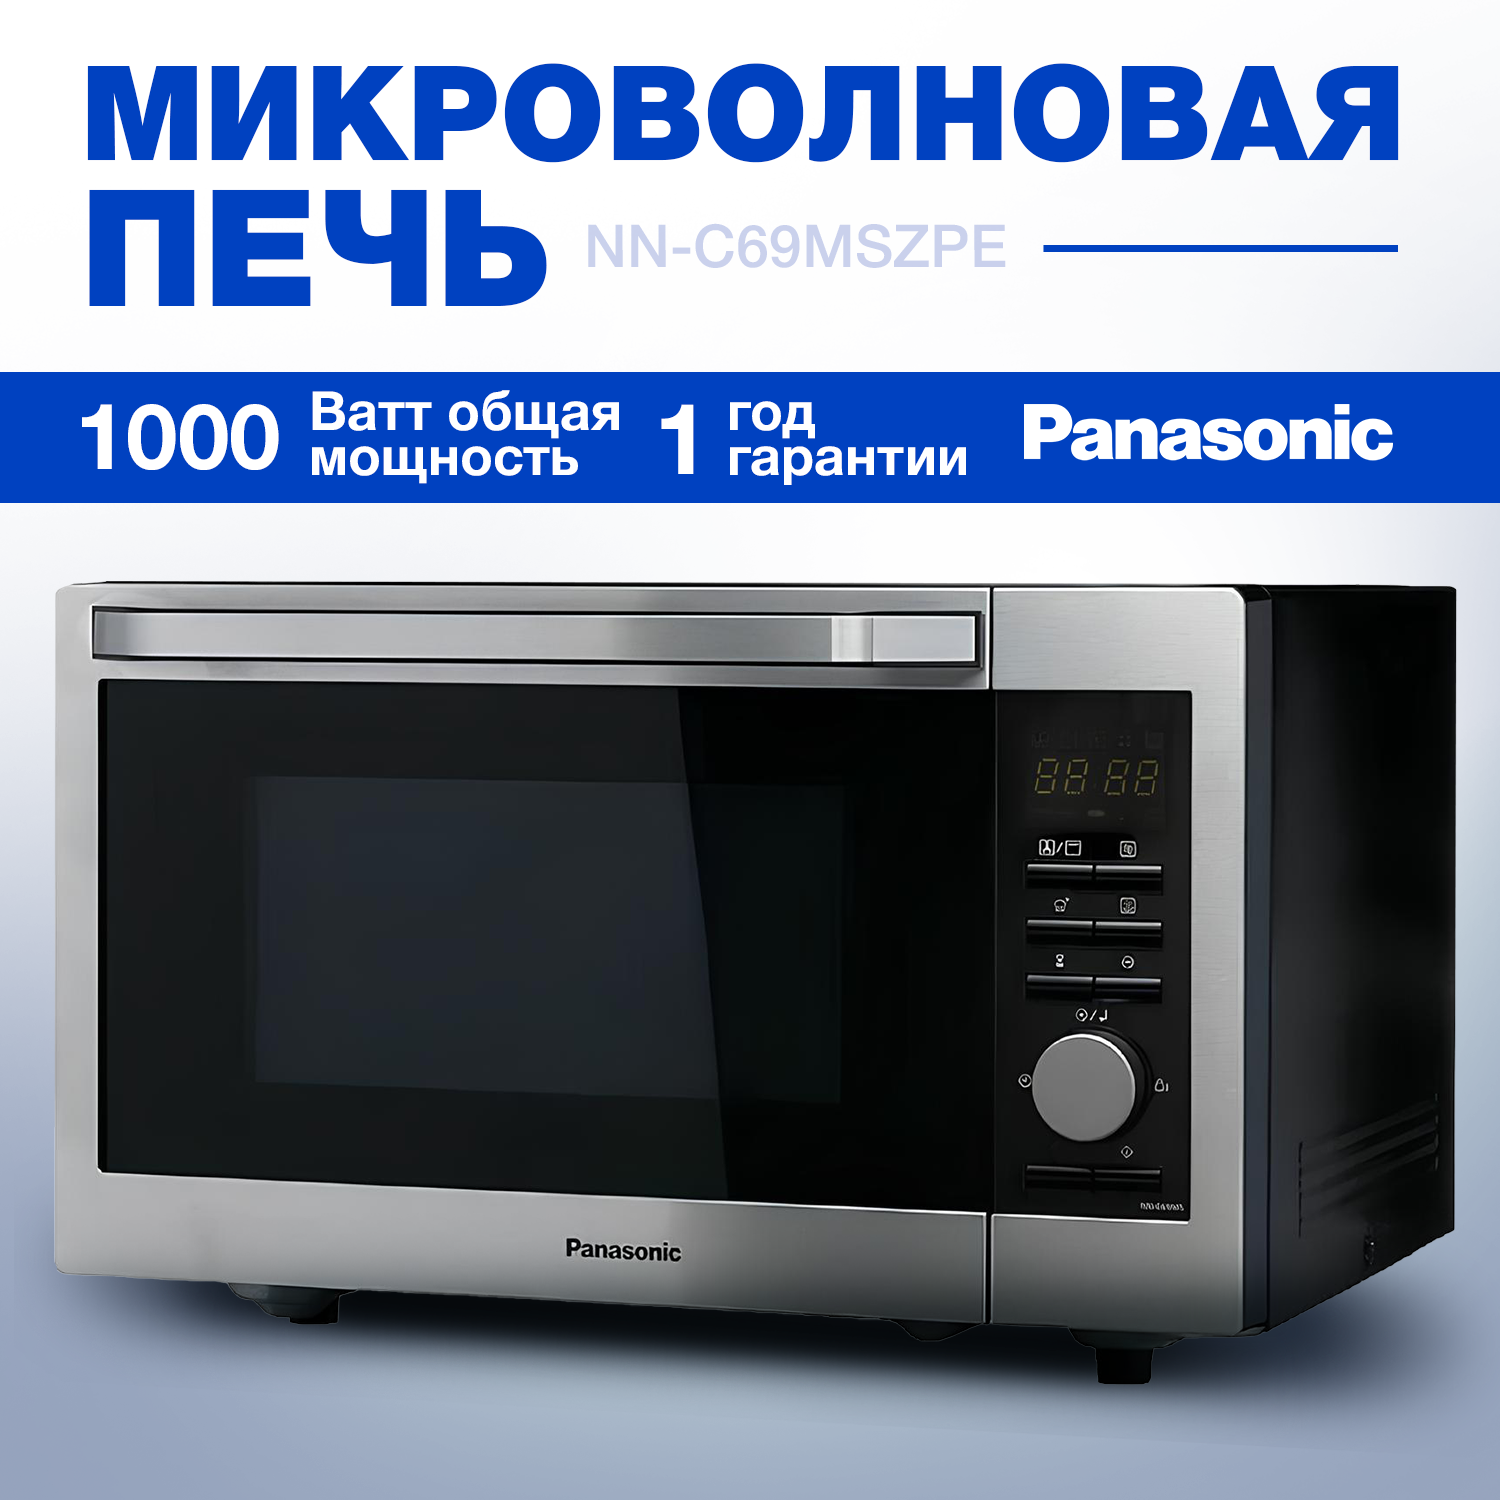 Микроволновая печь Panasonic - фото №8